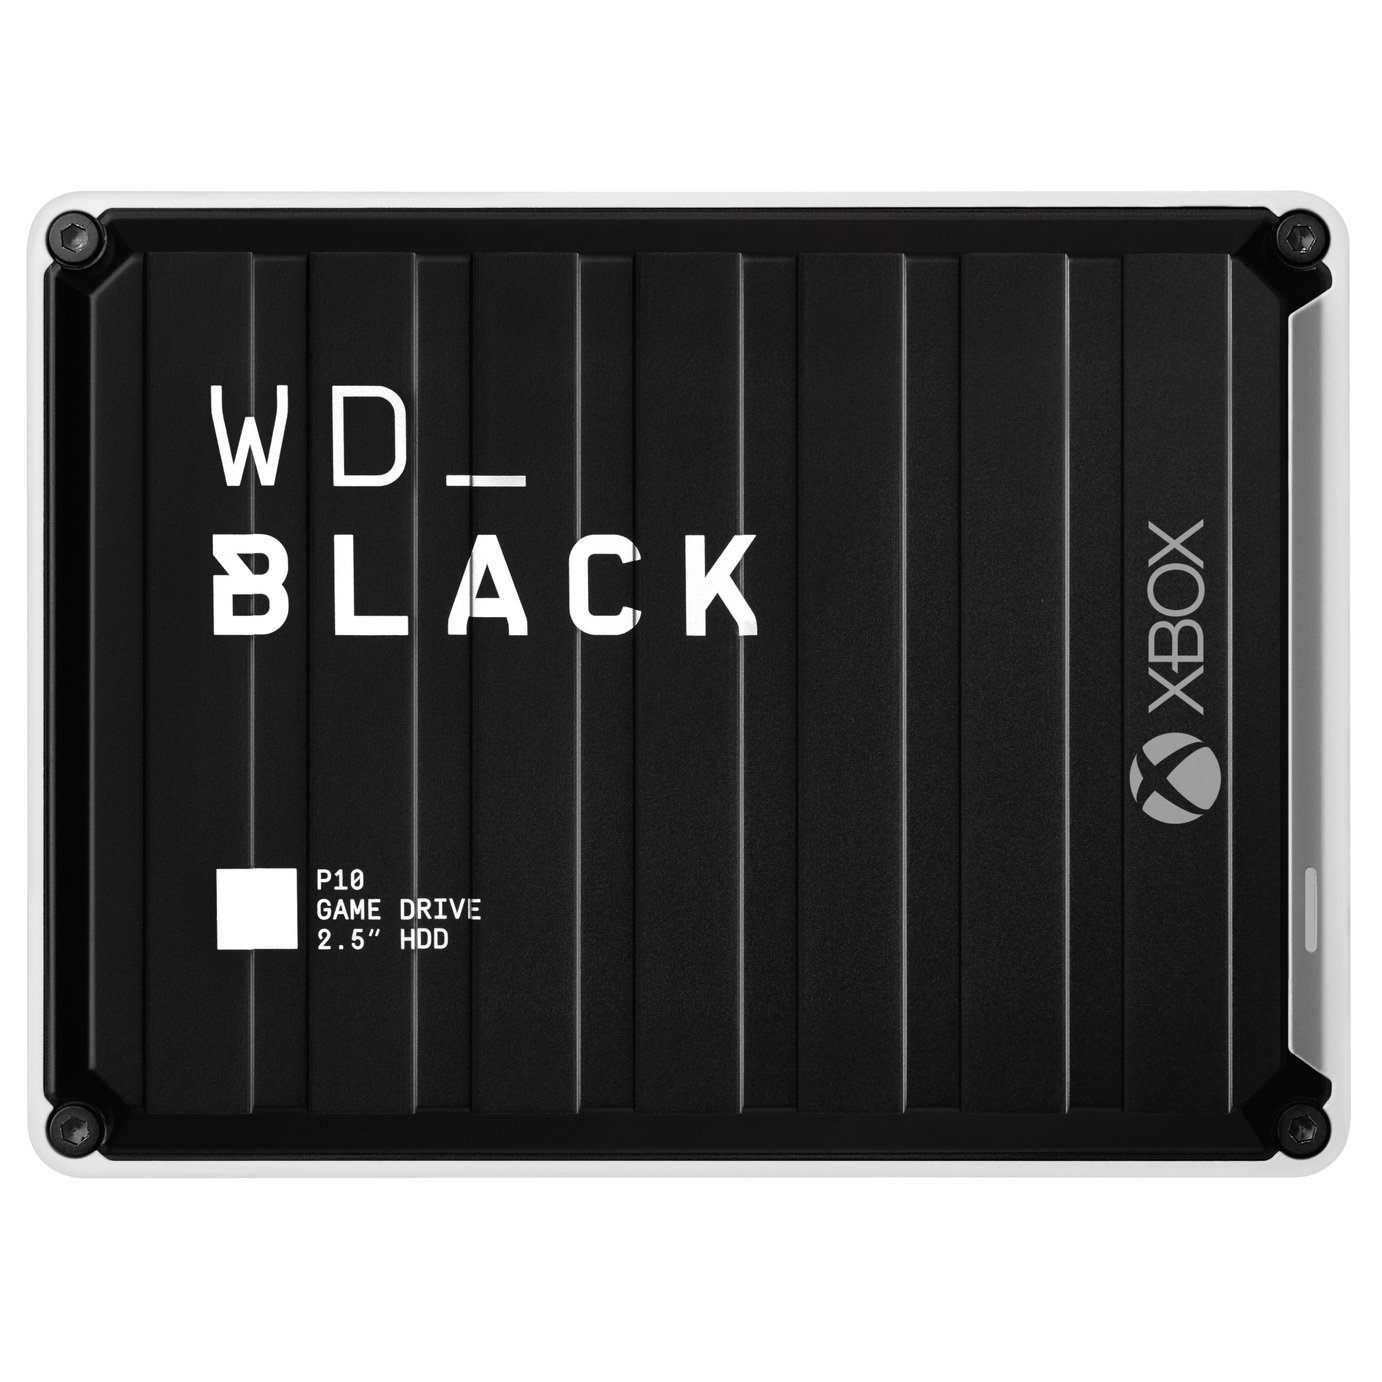 WD_BLACK P10 5TB Xbox External Gaming Drive 